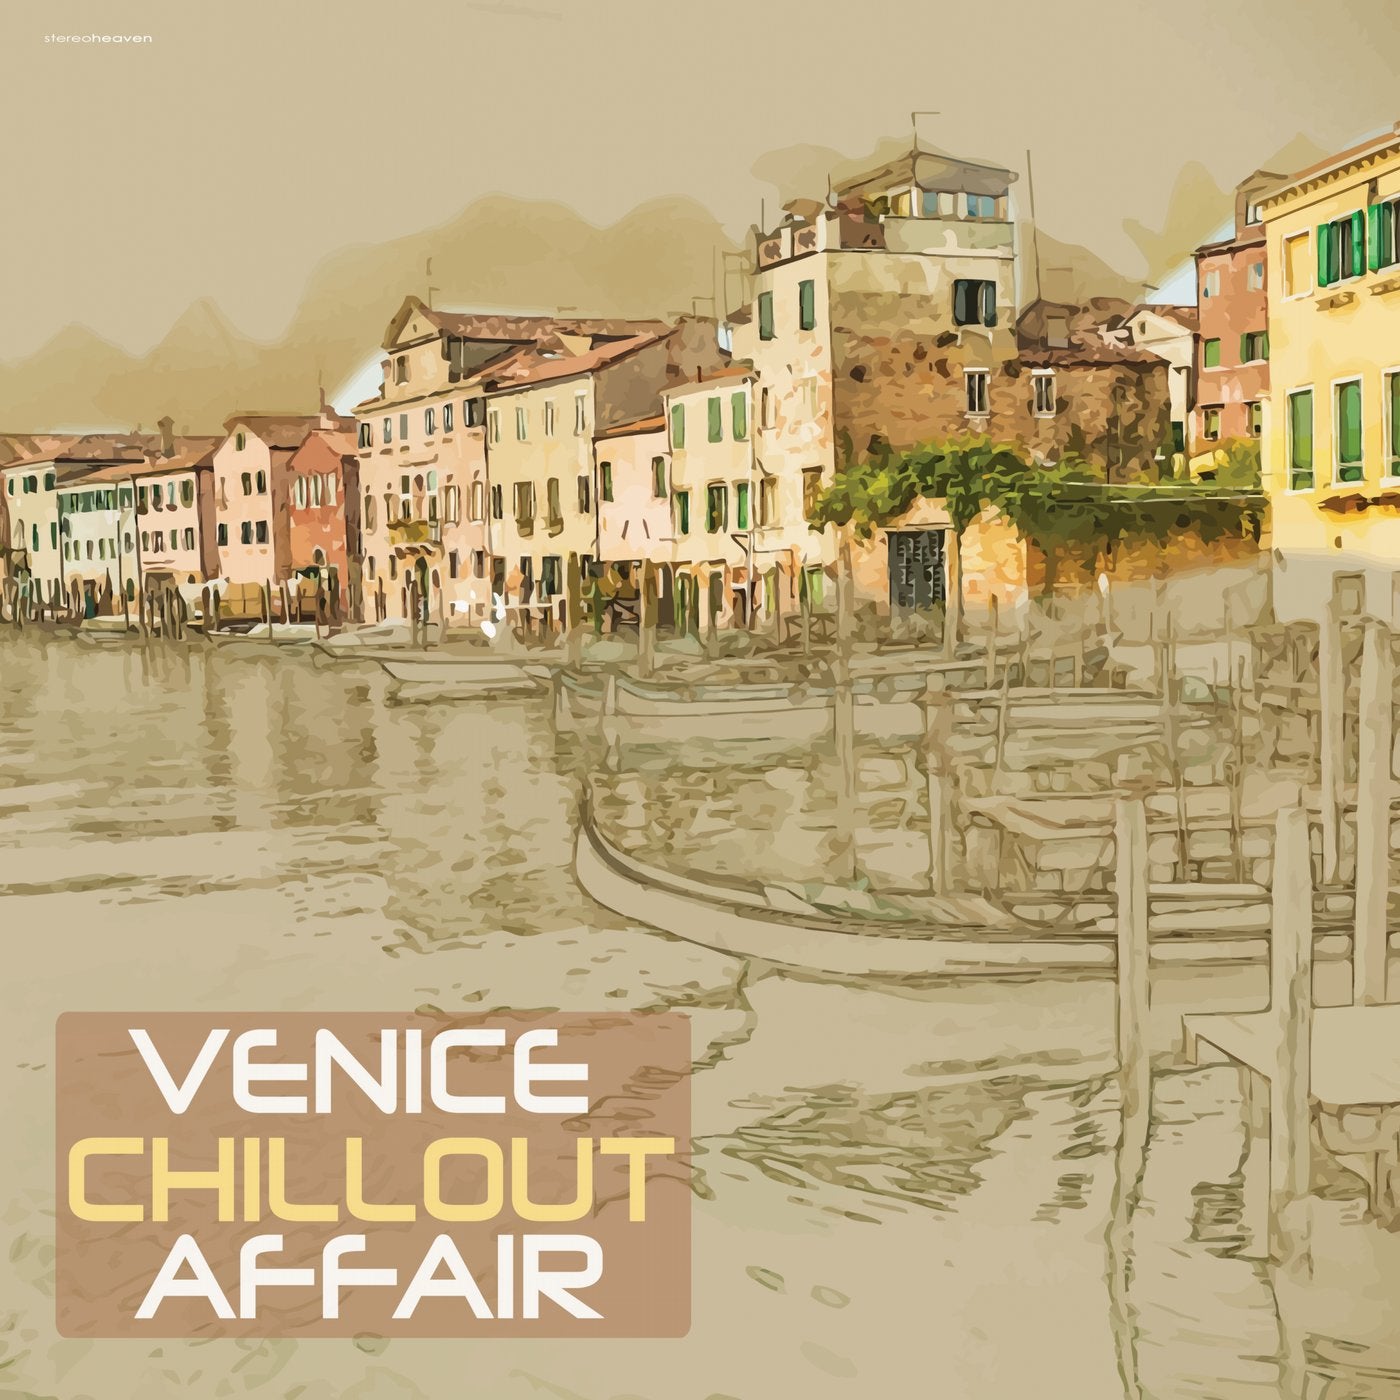 Venice Chillout Affair